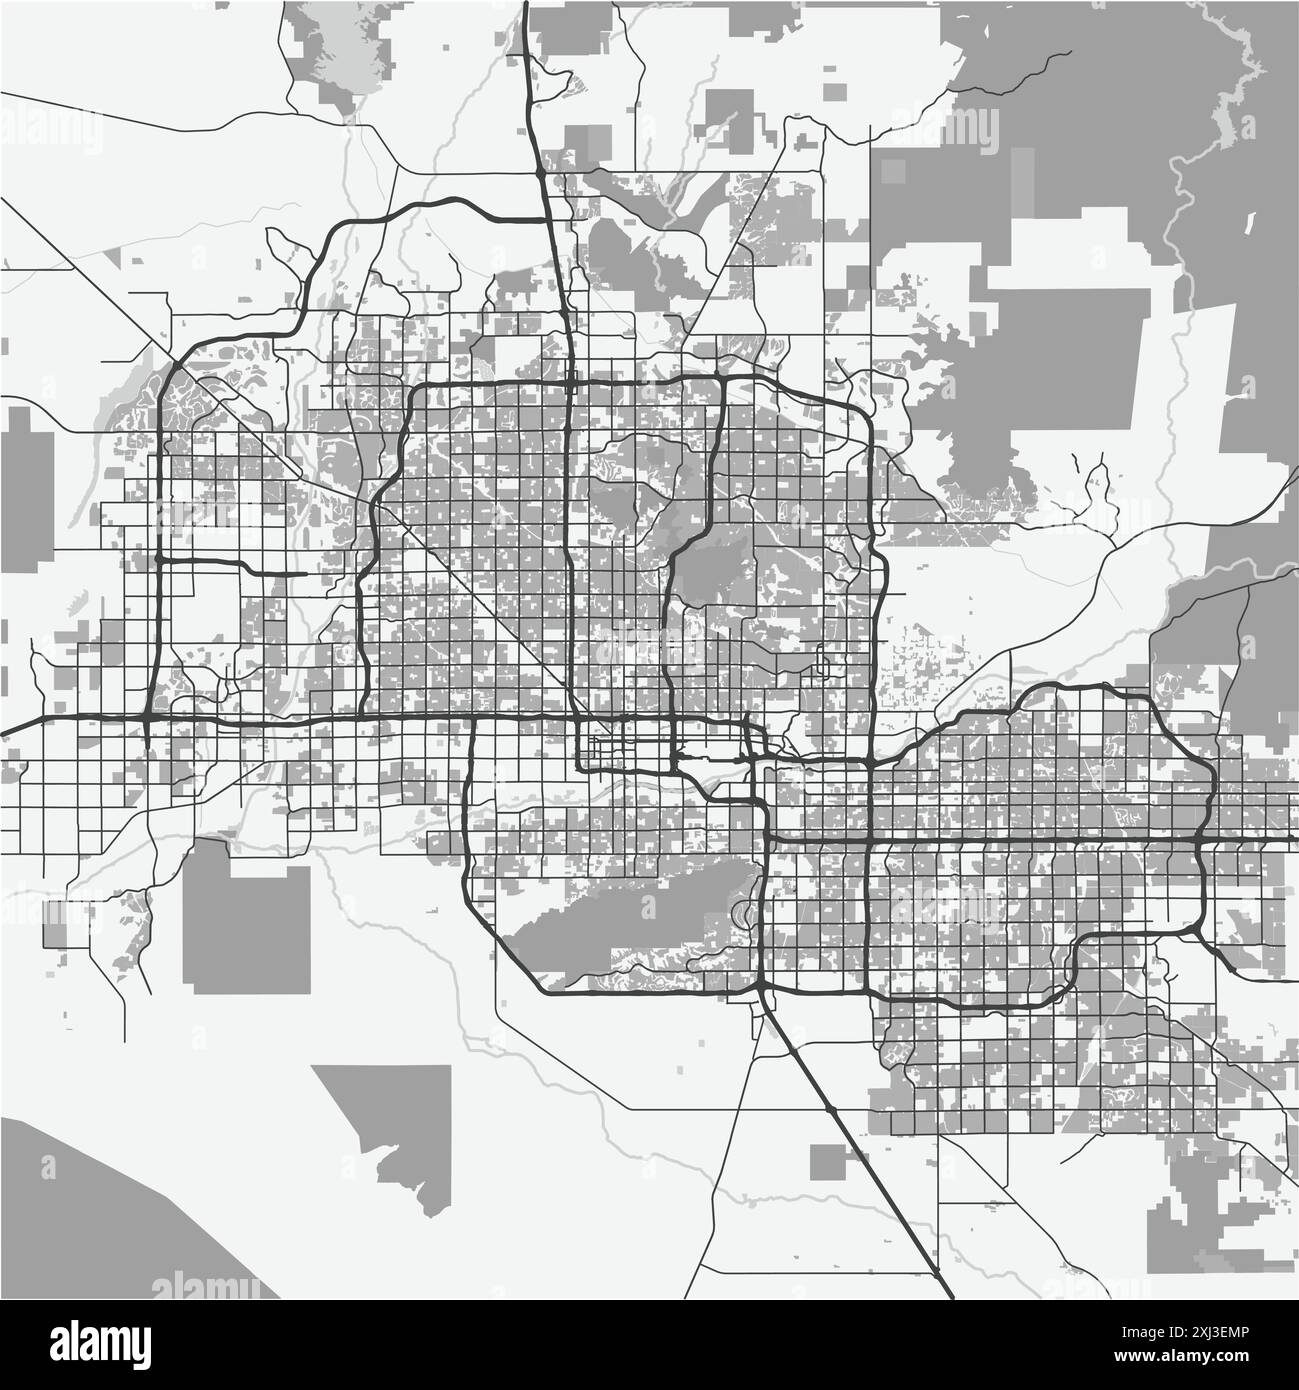 Karte von Phoenix in Arizona in Graustufen. Enthält mehrschichtigen Vektor mit Straßen, Wasser, Parks usw. Stock Vektor